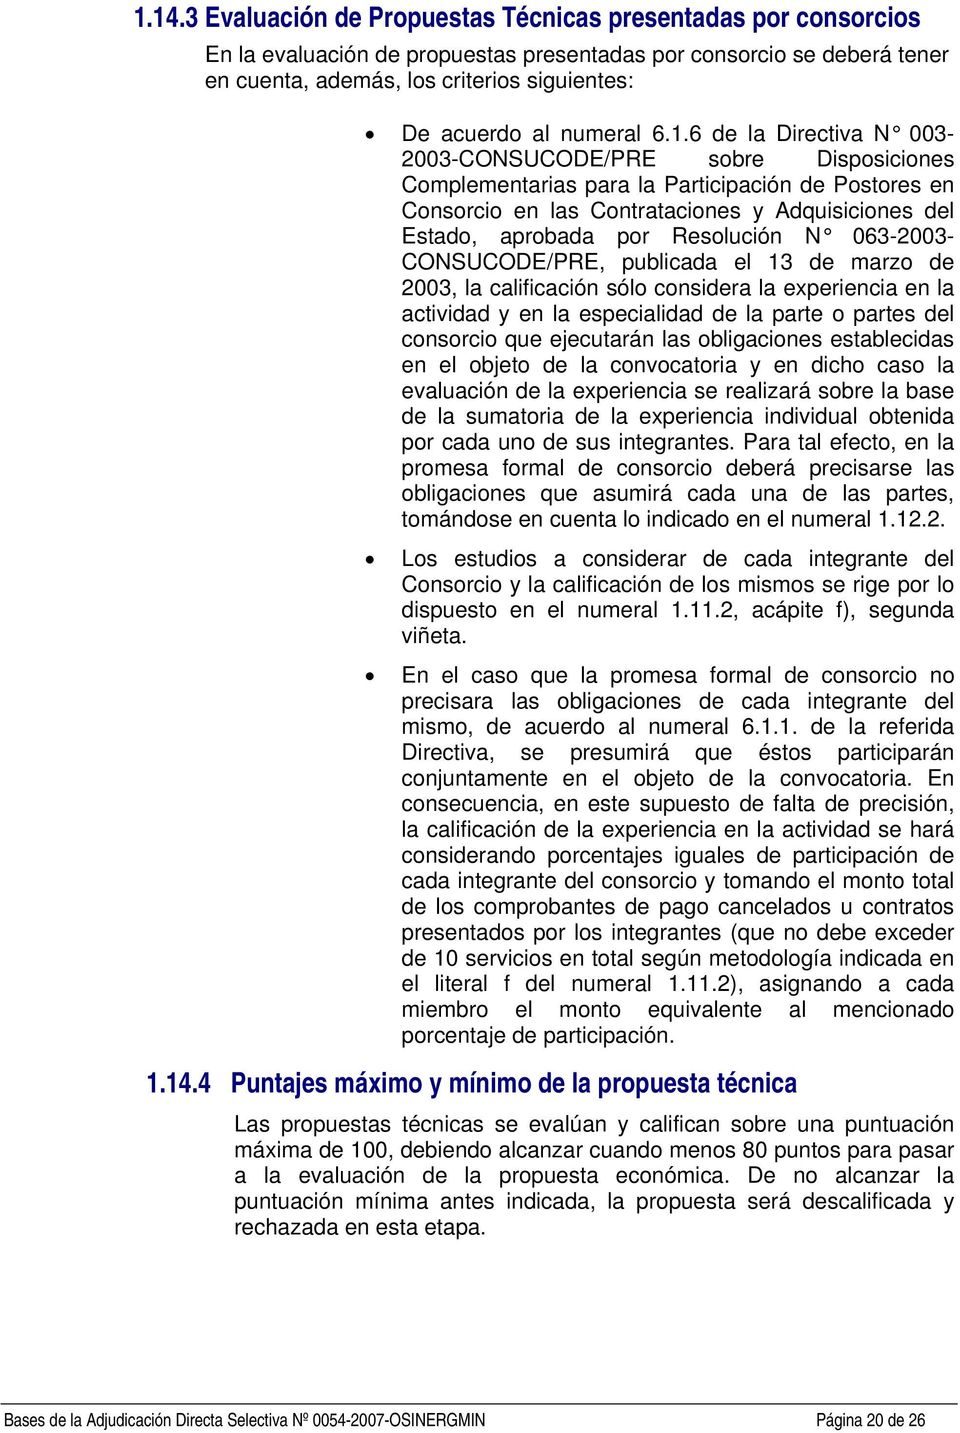 6 de la Directiva N 003-2003-CONSUCODE/PRE sobre Disposiciones Complementarias para la Participación de Postores en Consorcio en las Contrataciones y Adquisiciones del Estado, aprobada por Resolución